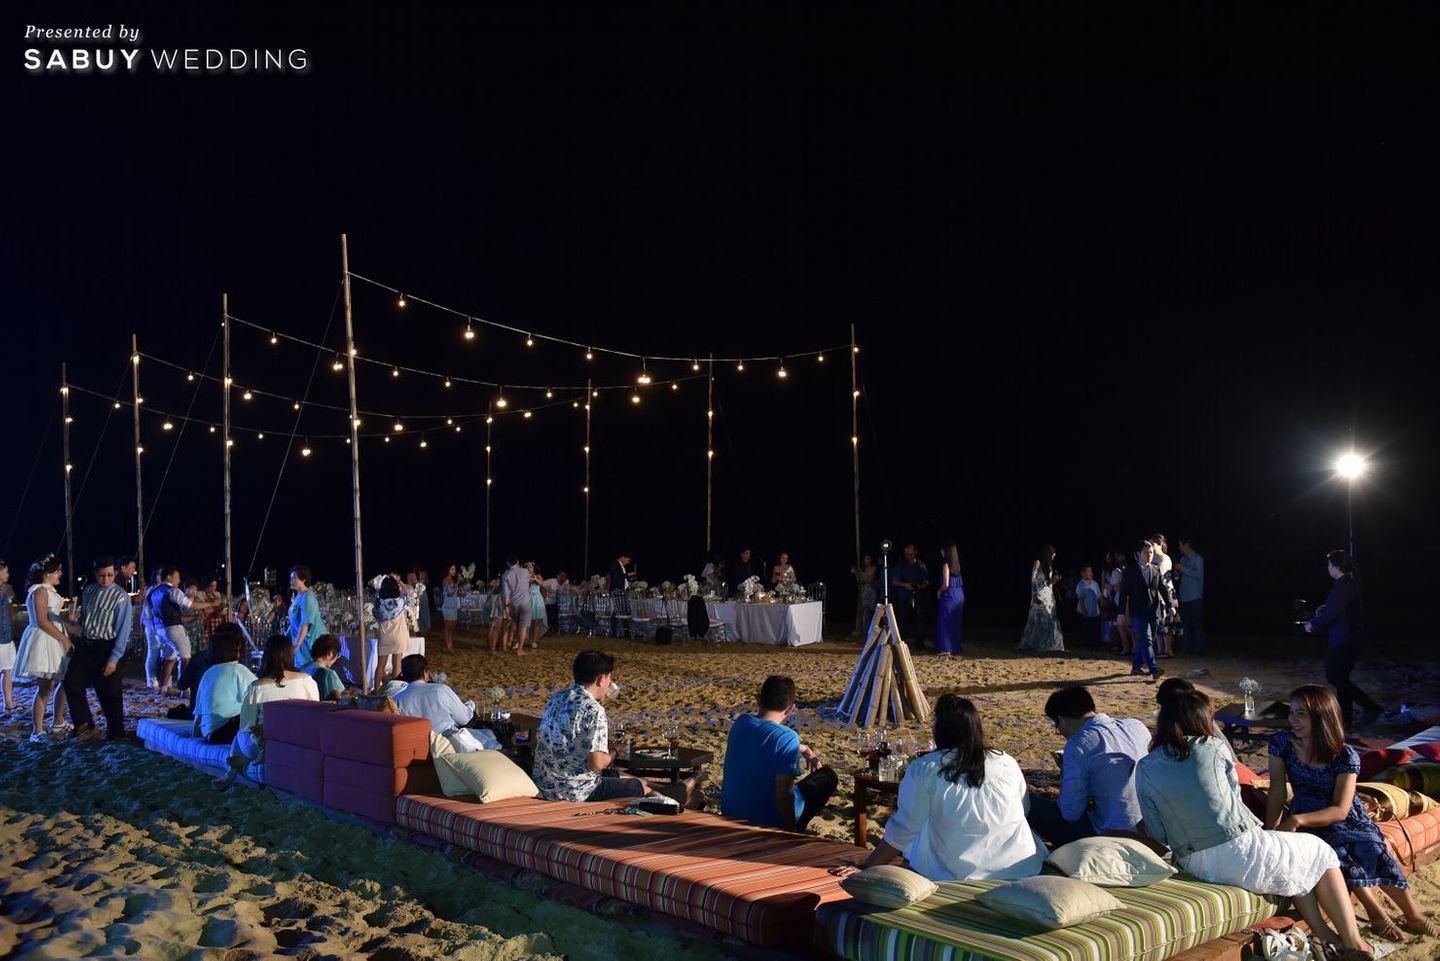 อาฟเตอร์ปาร์ตี้,long-table,งานแต่งริมทะเล,งานแต่ง outdoor รีวิวงานแต่งริมทะเลสุดแซ่บ ไม่เคร่งพิธี เน้นอาฟเตอร์ปาร์ตี้มันส์ๆ @Villa Maroc